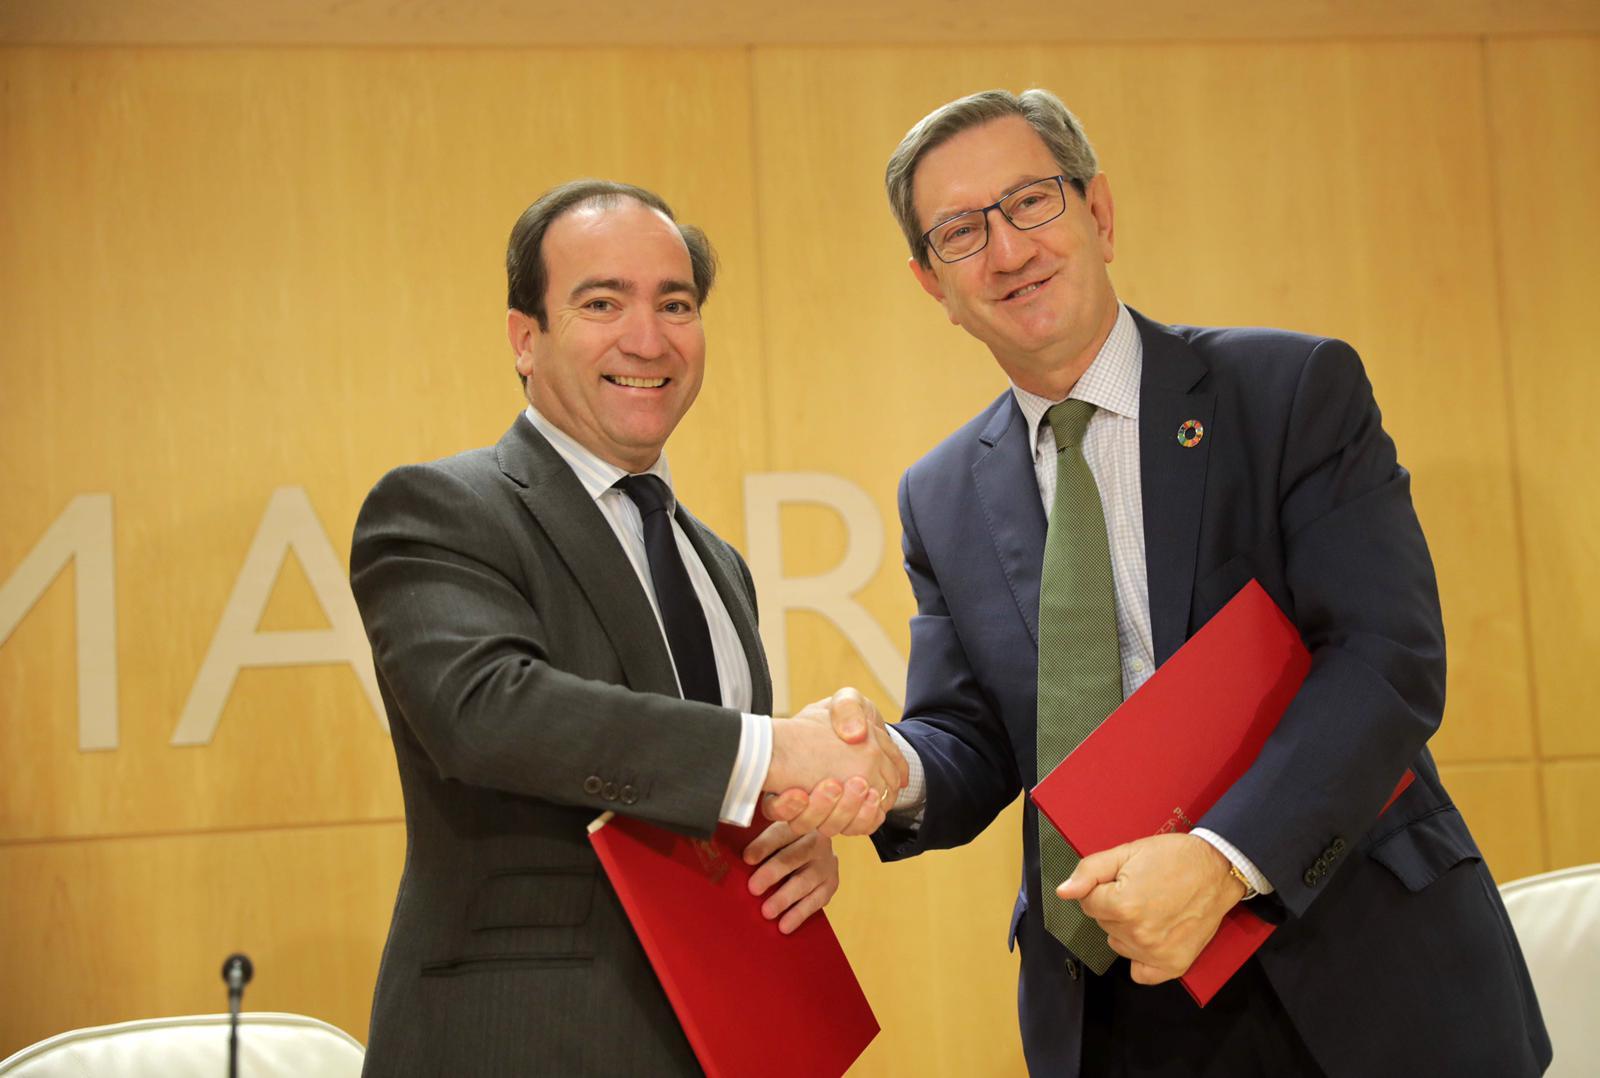 El delegado del área de Medio Ambiente y Movilidad del Ayuntamiento de Madrid, Borja Carabante, y el director de la Región Madrid de i-DE, Efigenio Golvano, firman un acuerdo por la transición energética